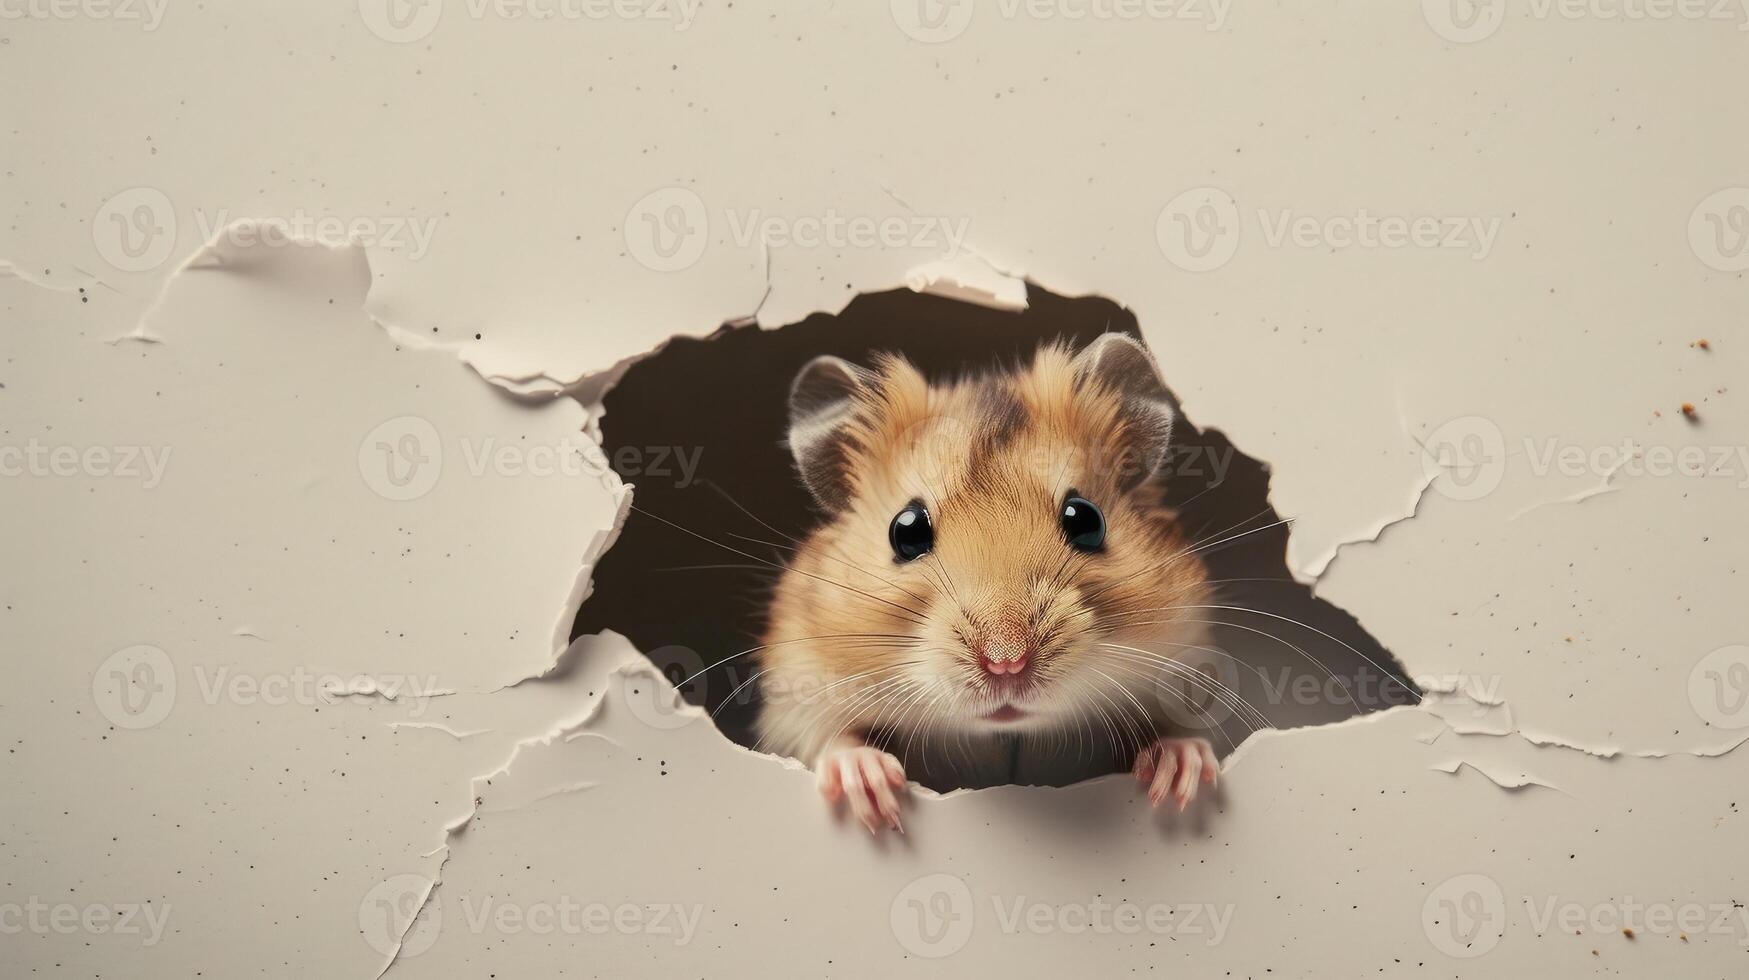 en fundersam hamster framväxande från en riva i grå papper. utseende ut av de glipa foto